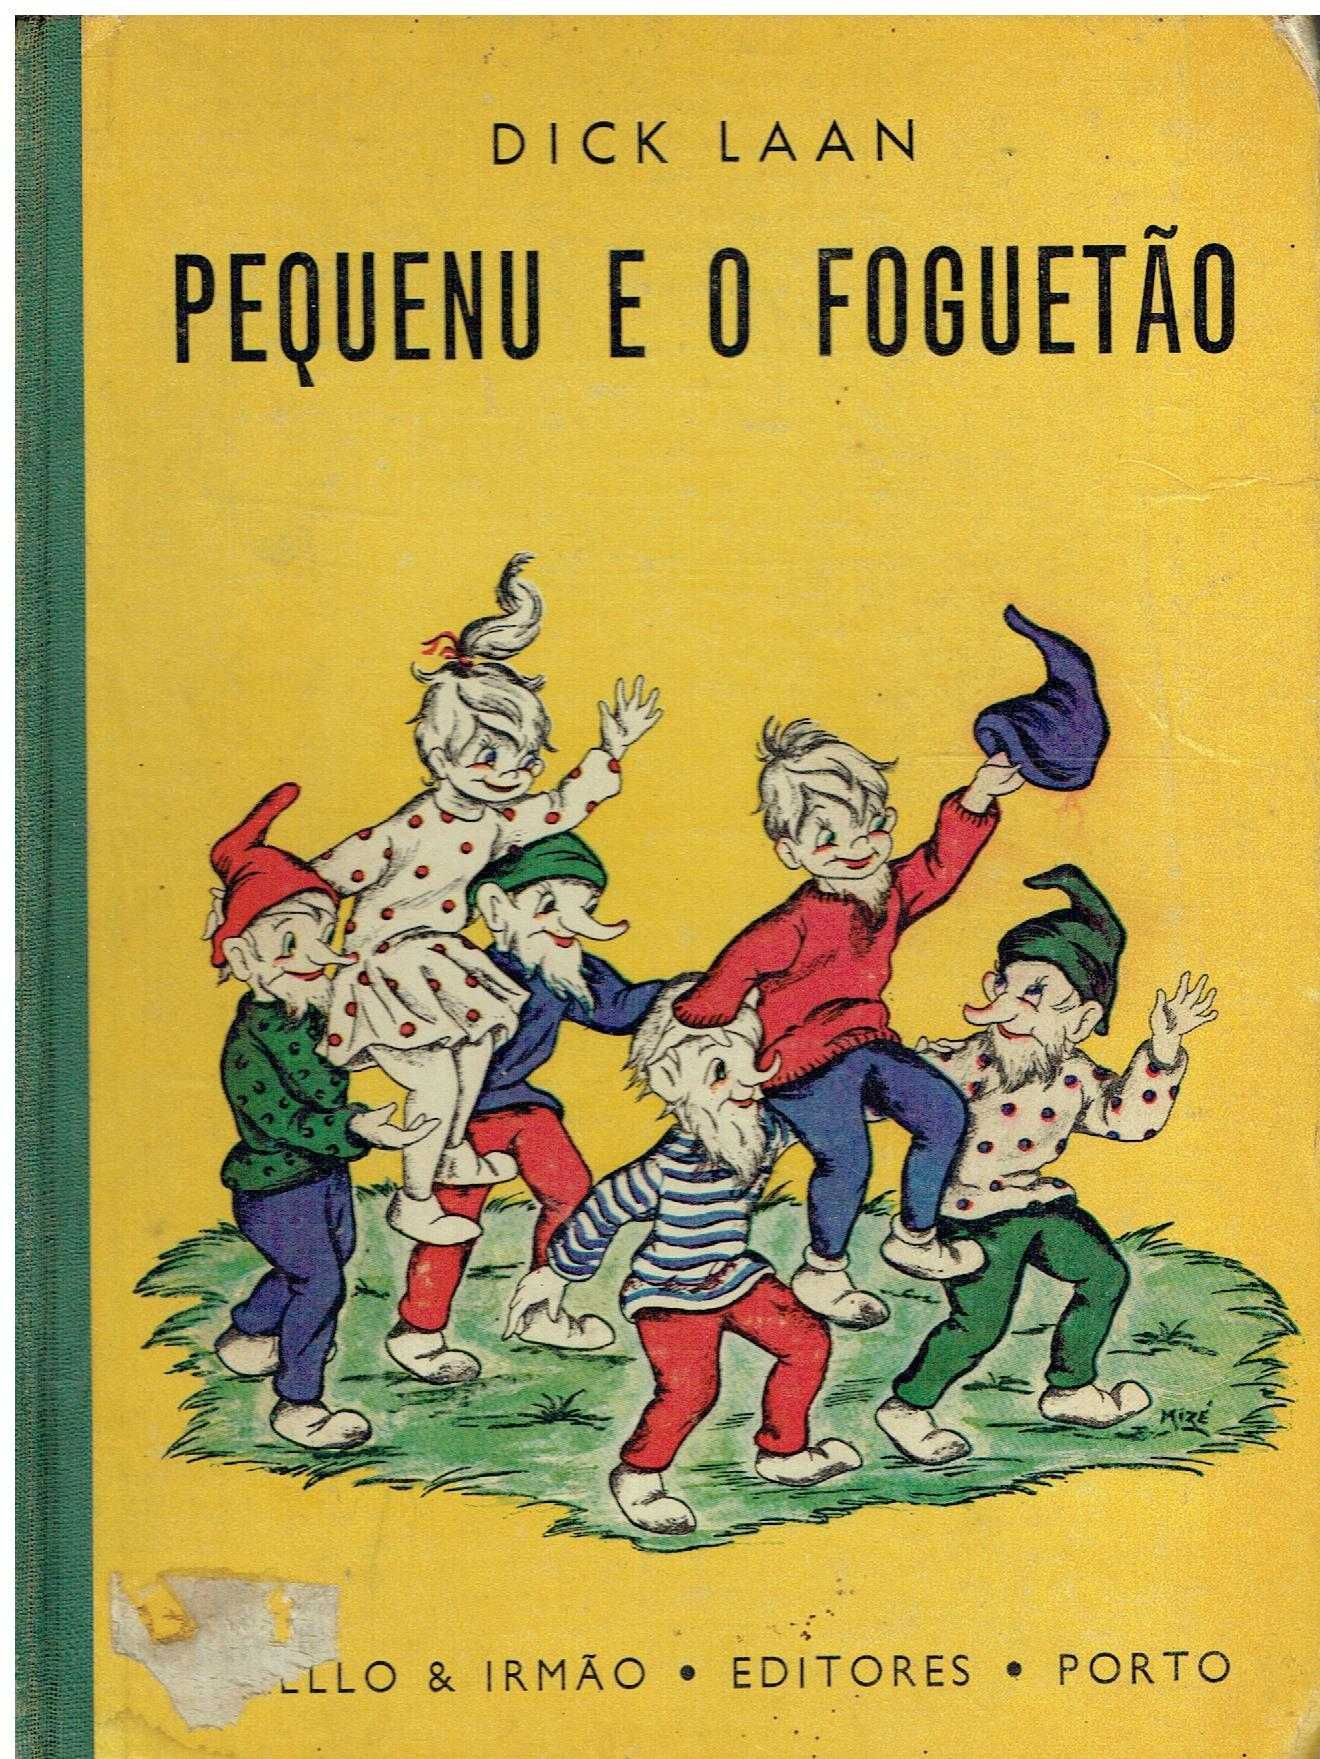 13643

Pequenu e o Foguetão(1965)
de Dick Laan